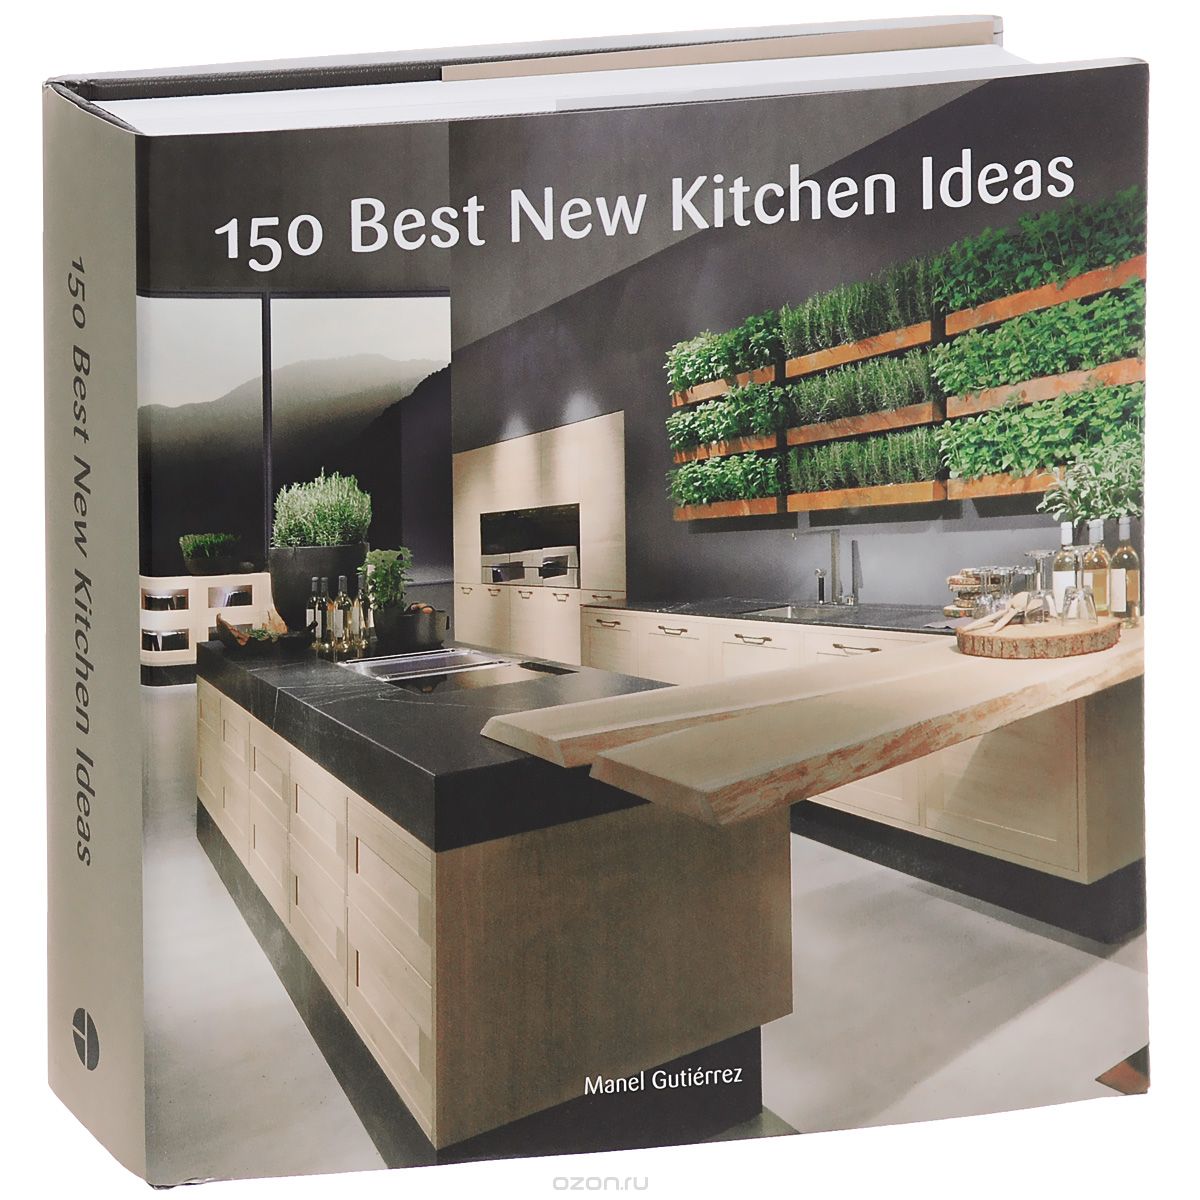 Скачать книгу "150 Best New Kitchen Ideas"